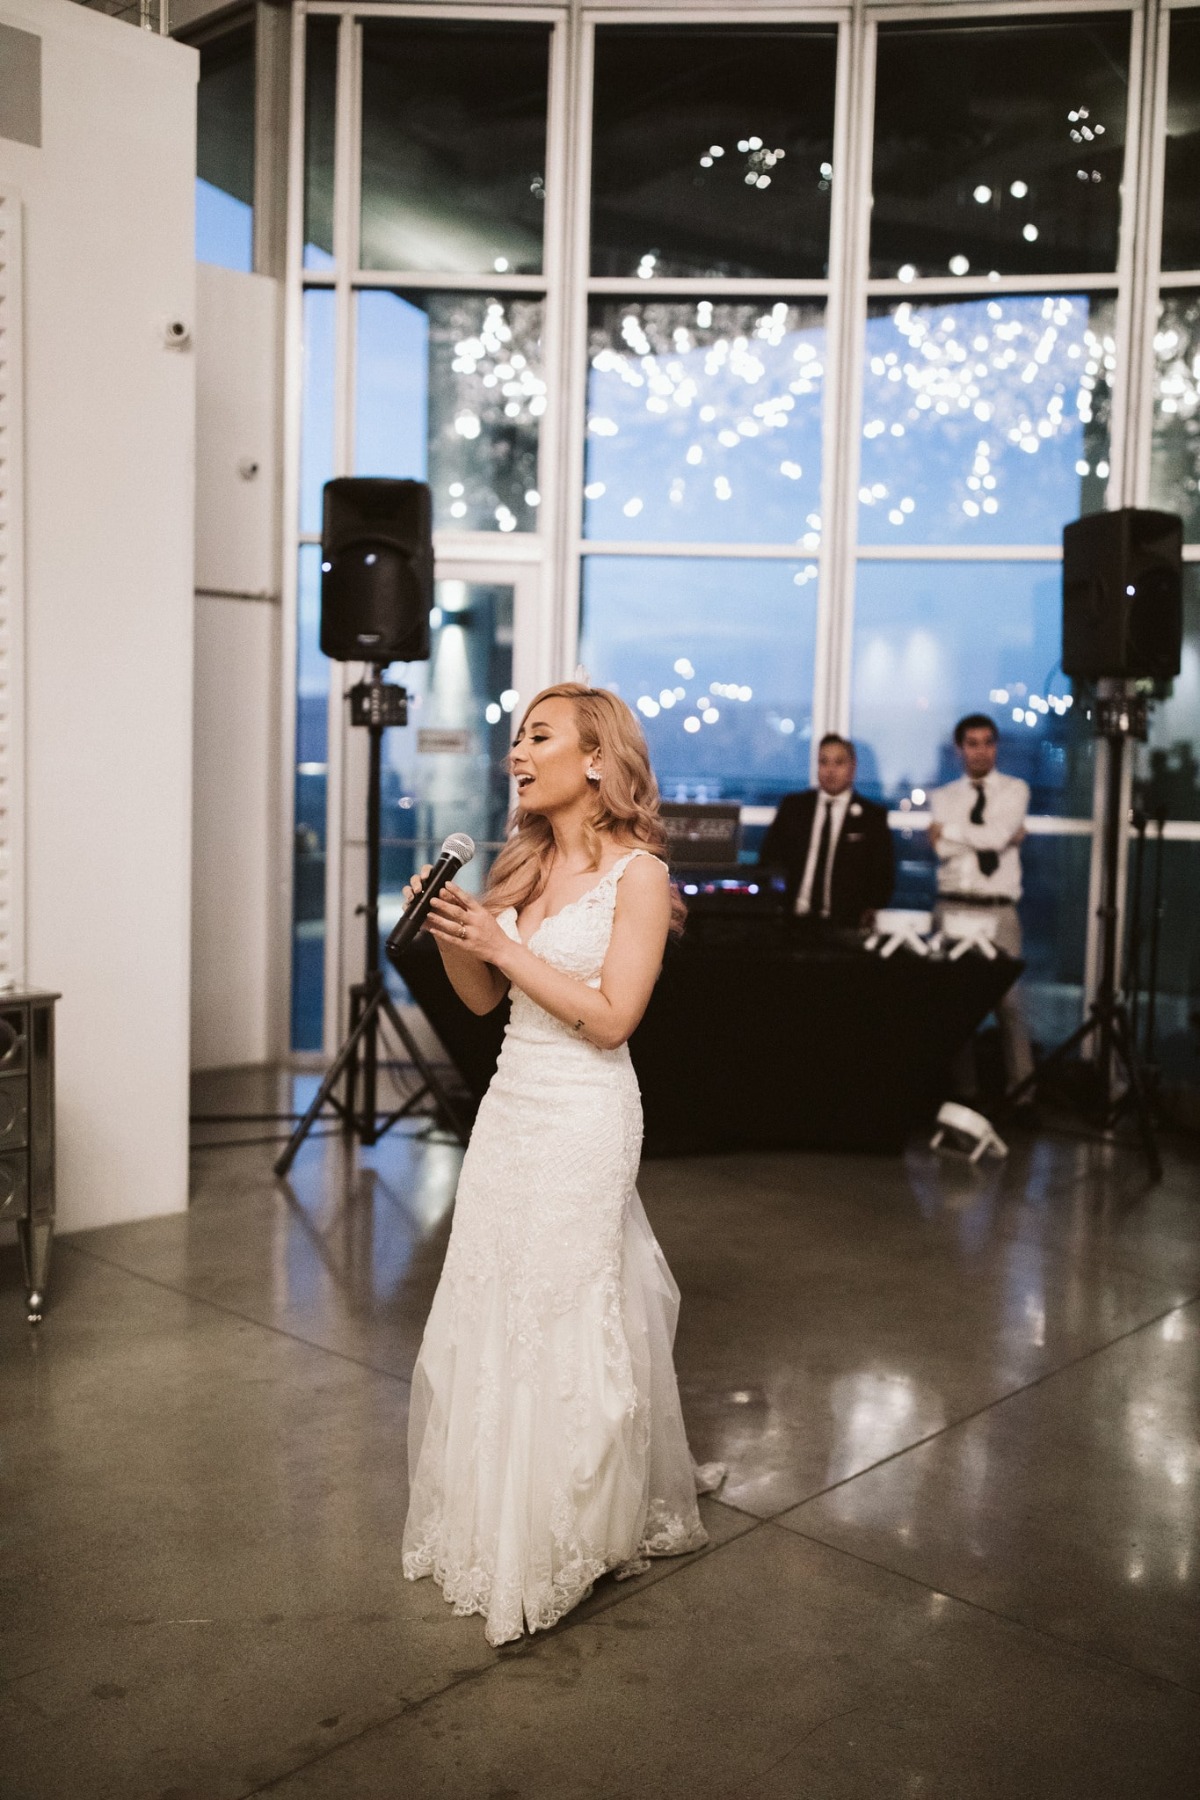 Bride singing to groom